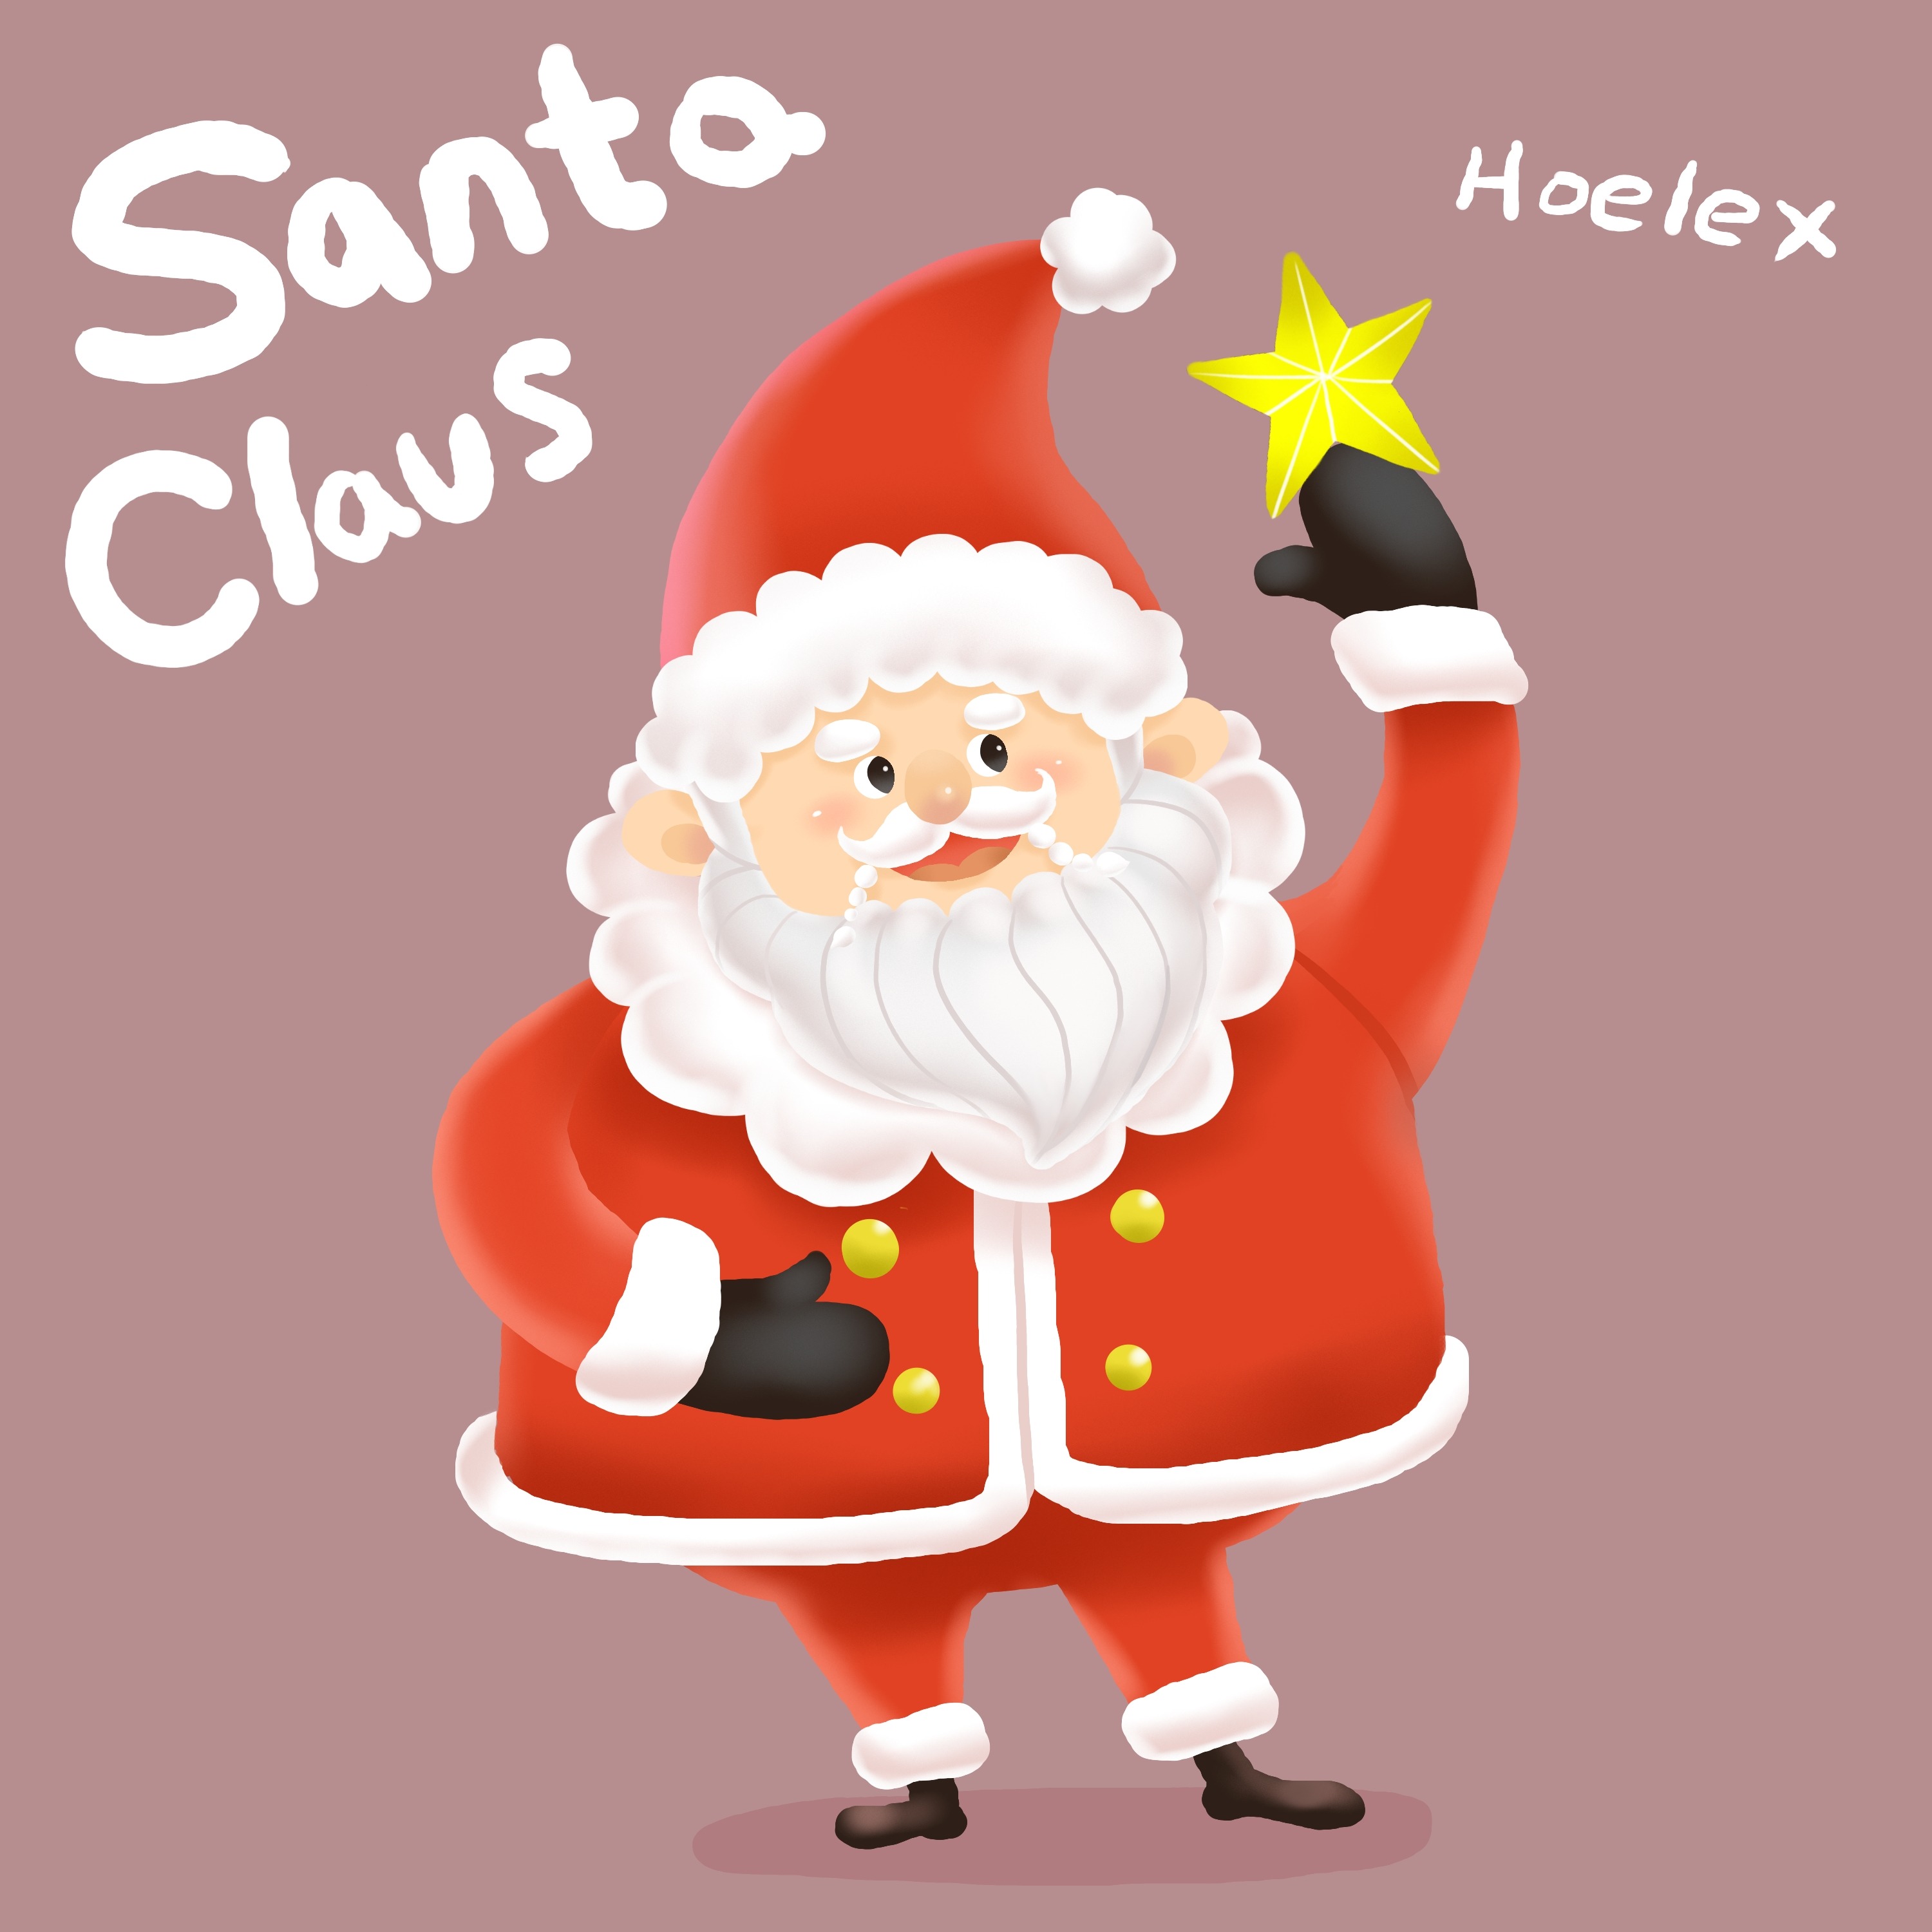 二等身Q版-聖誕老公公Santa Claus-Hoelex.jpg